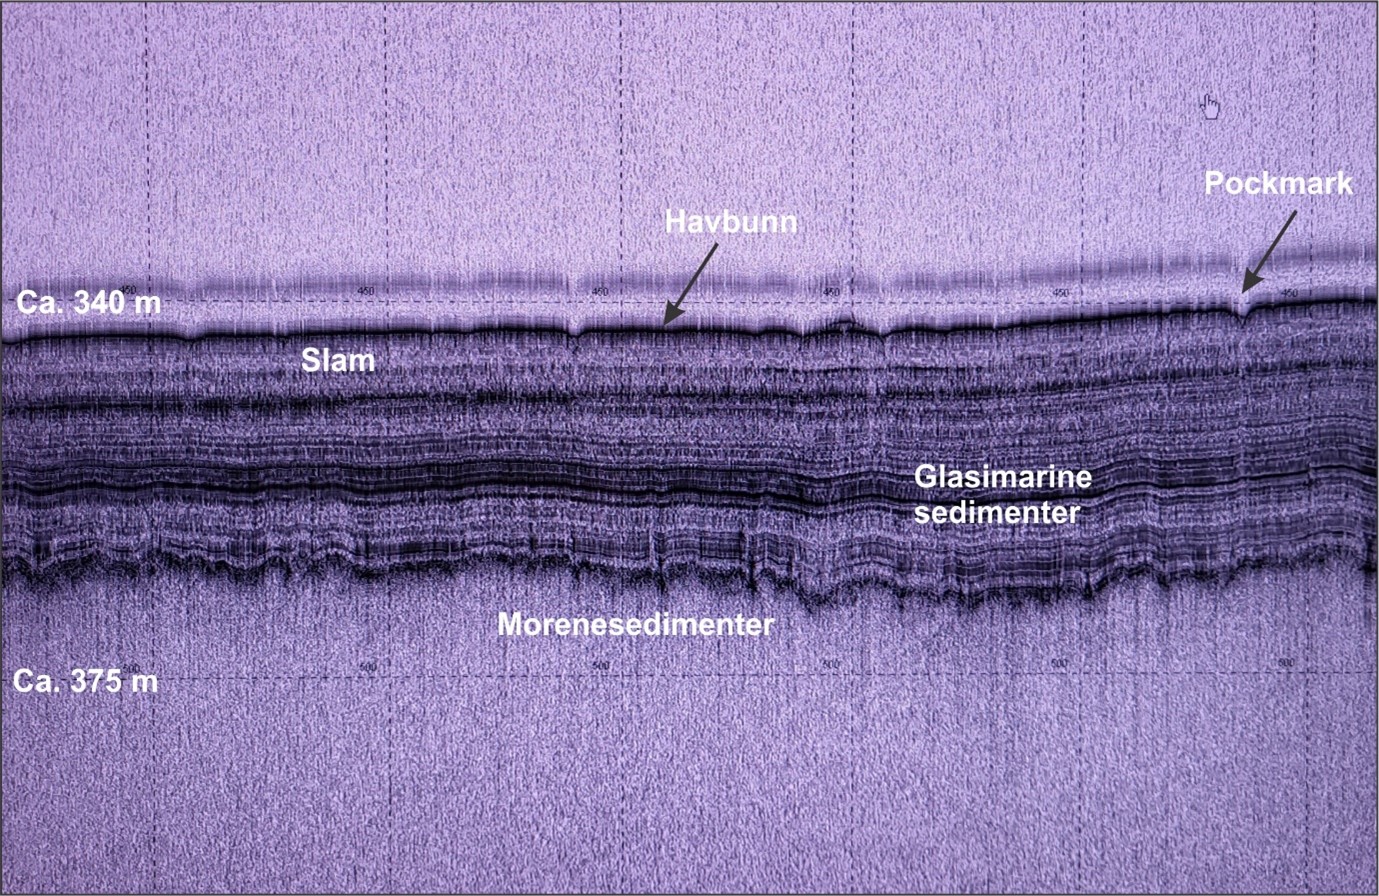 Svart-hvitt bilde som viser havbunnens sedimenter på 340 meters dyp til 375 meters dyp.